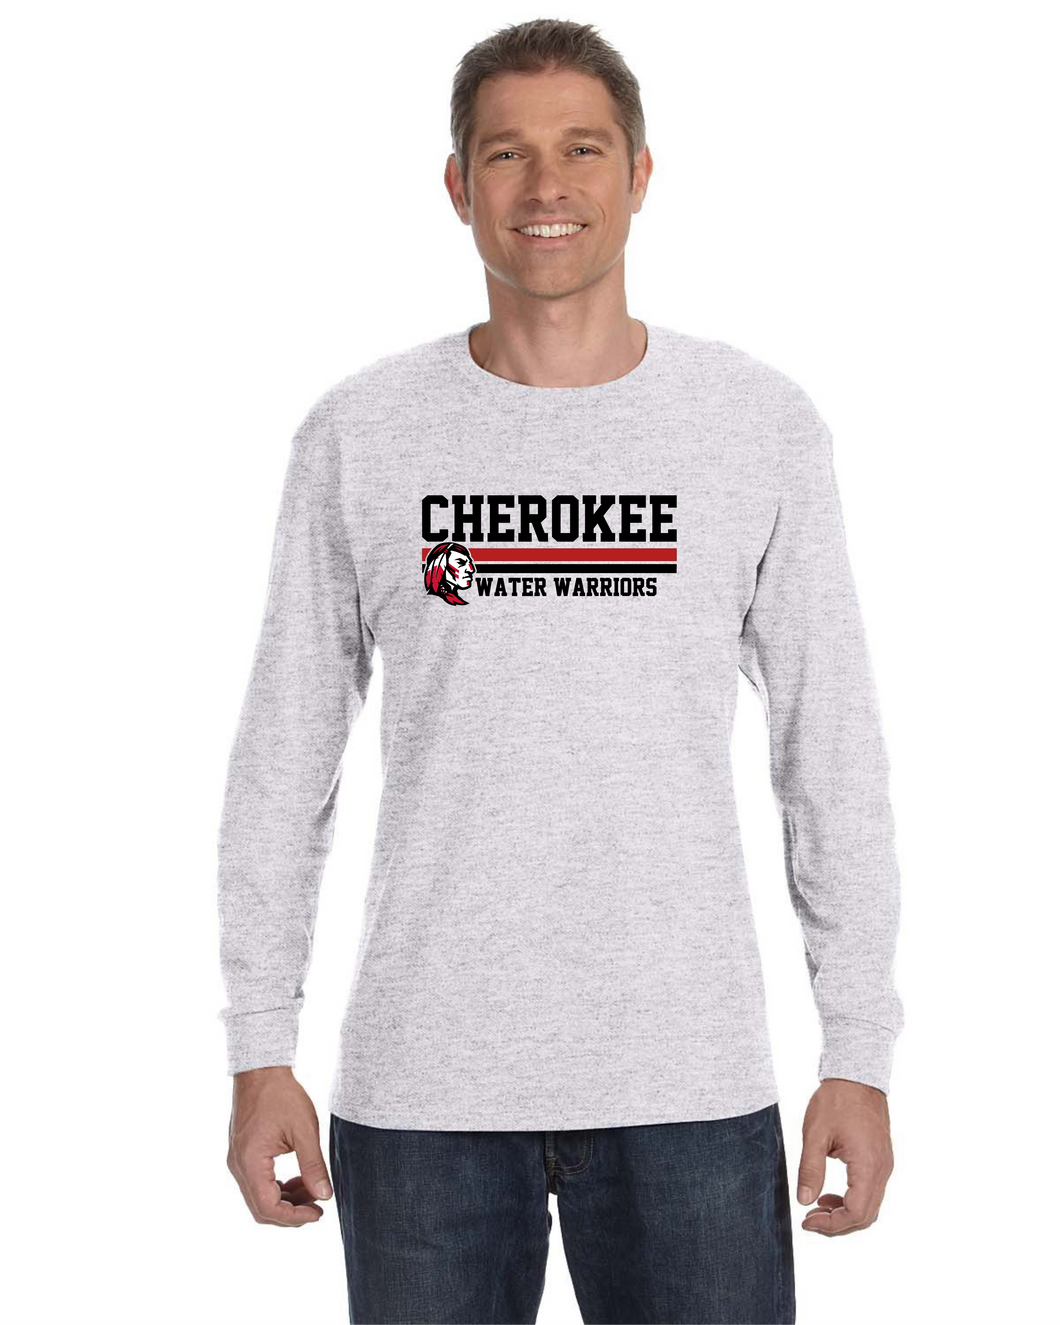 CHS-SD-456-2 - Jerzees 5.6 oz. DRI-POWER® ACTIVE Long-Sleeve T-Shirt - Cherokee Warrior Water Warriors Logo